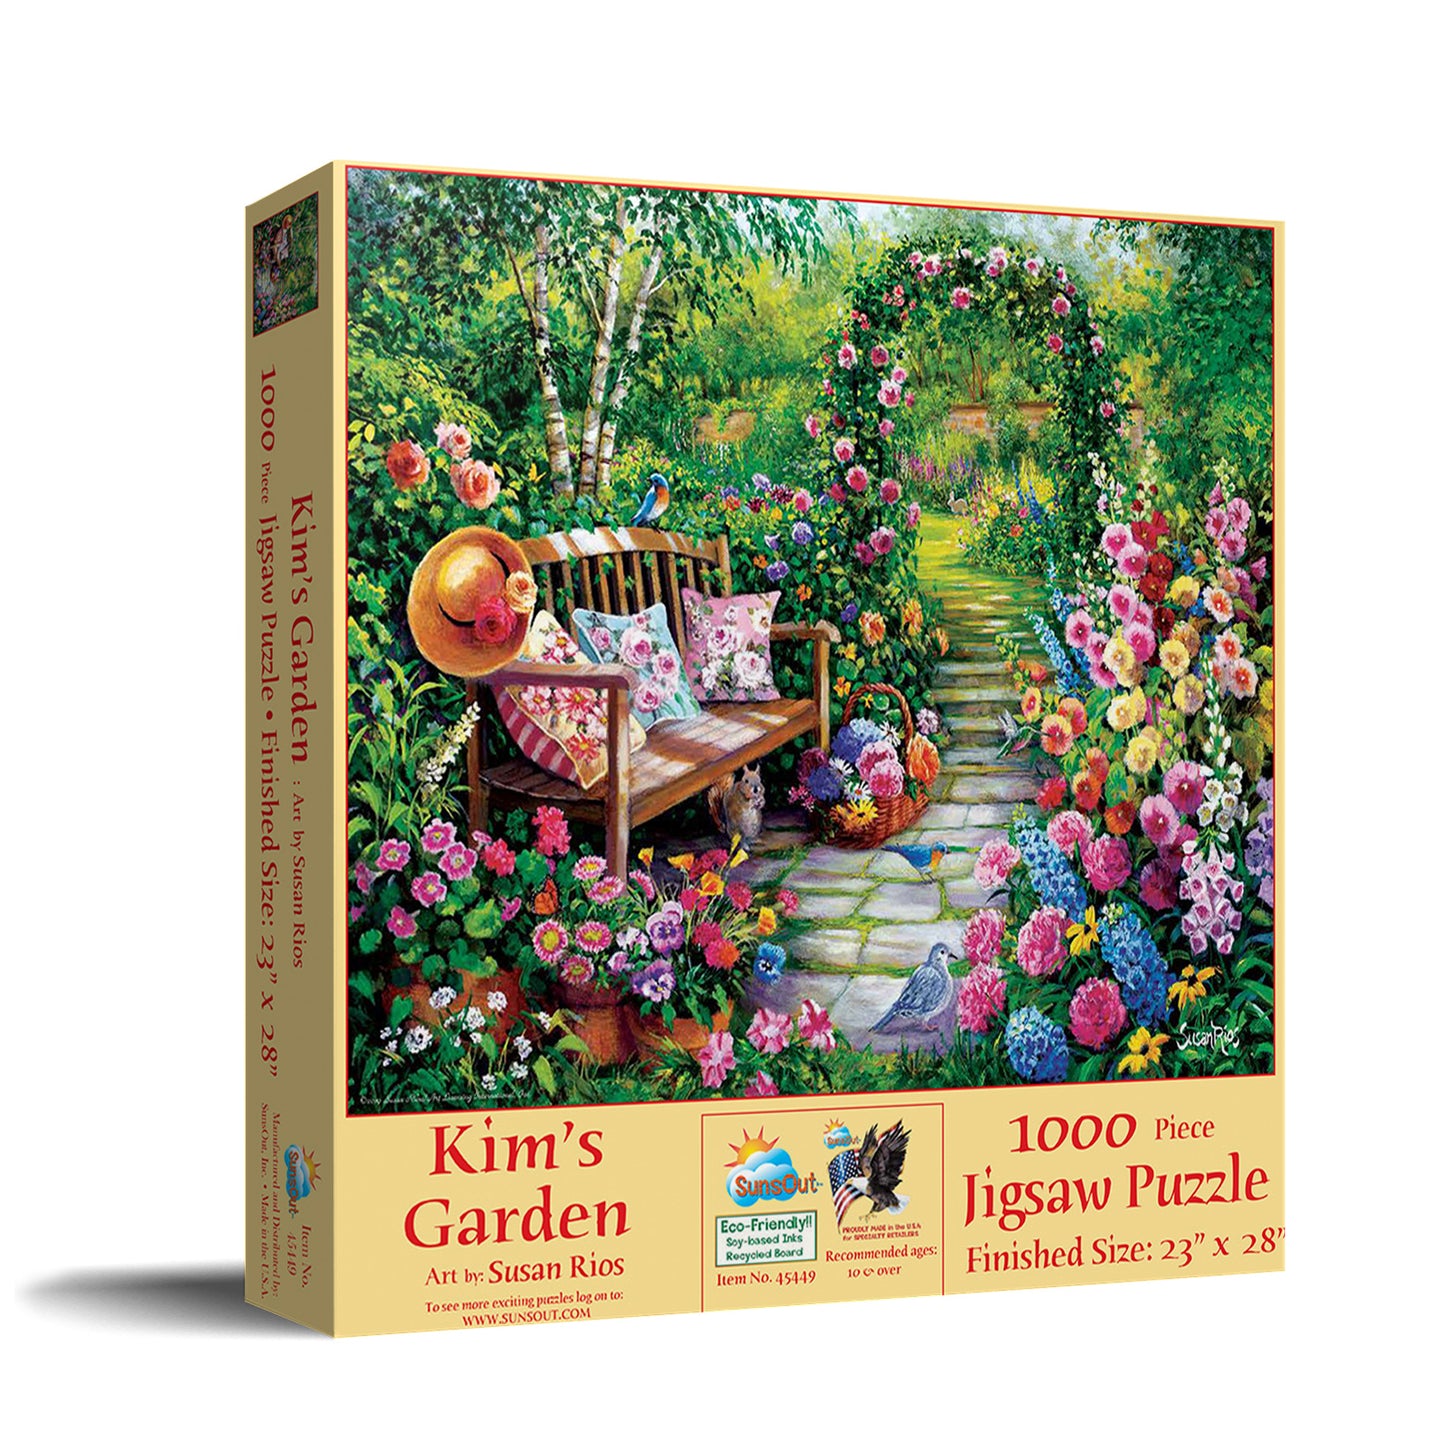 Kim's Garden - 1000 Piece Jigsaw Puzzle